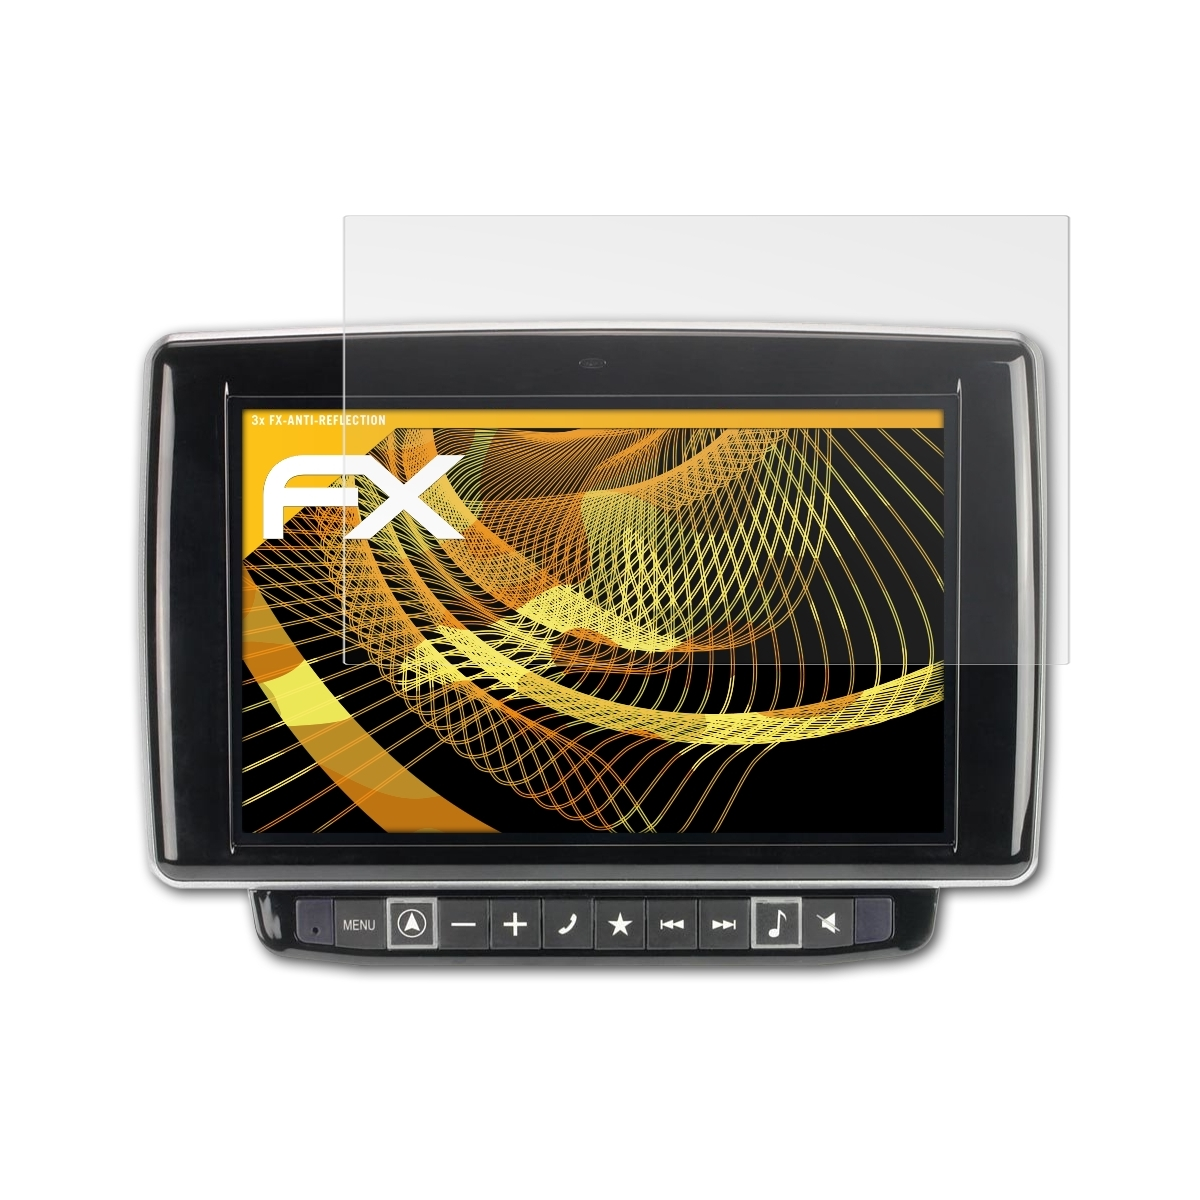 ATFOLIX 3x FX-Antireflex Alpine X901D-DU) Displayschutz(für